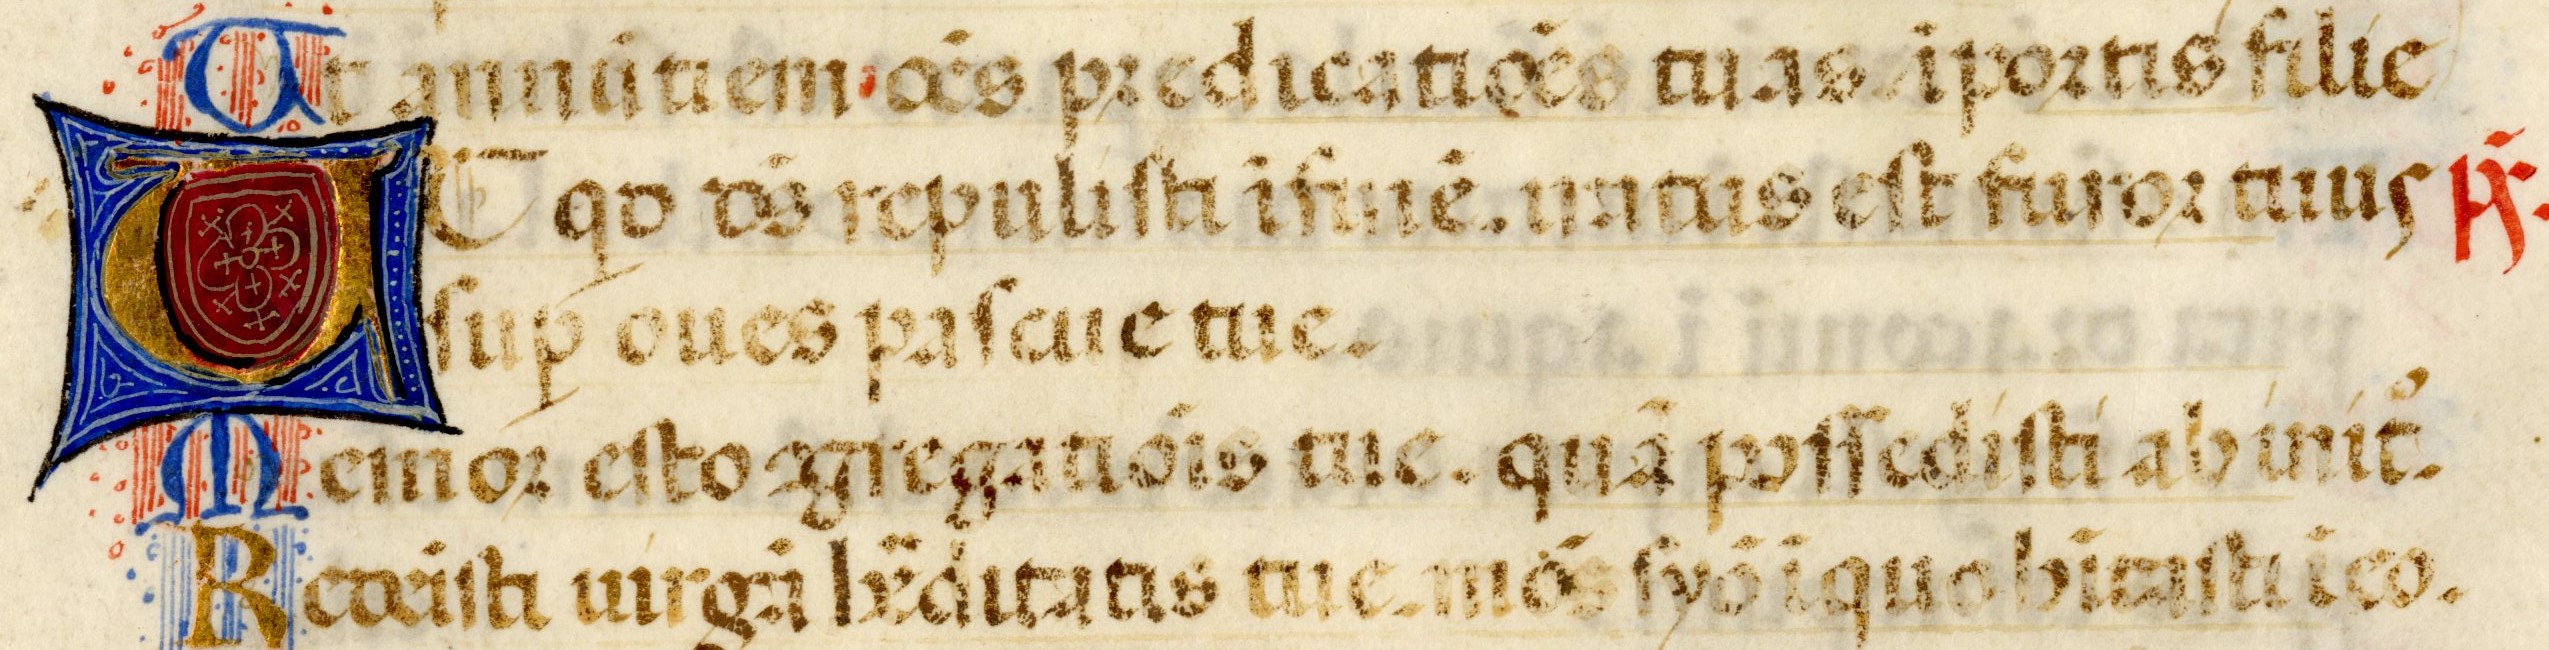 Psalter, 1485 A.D.